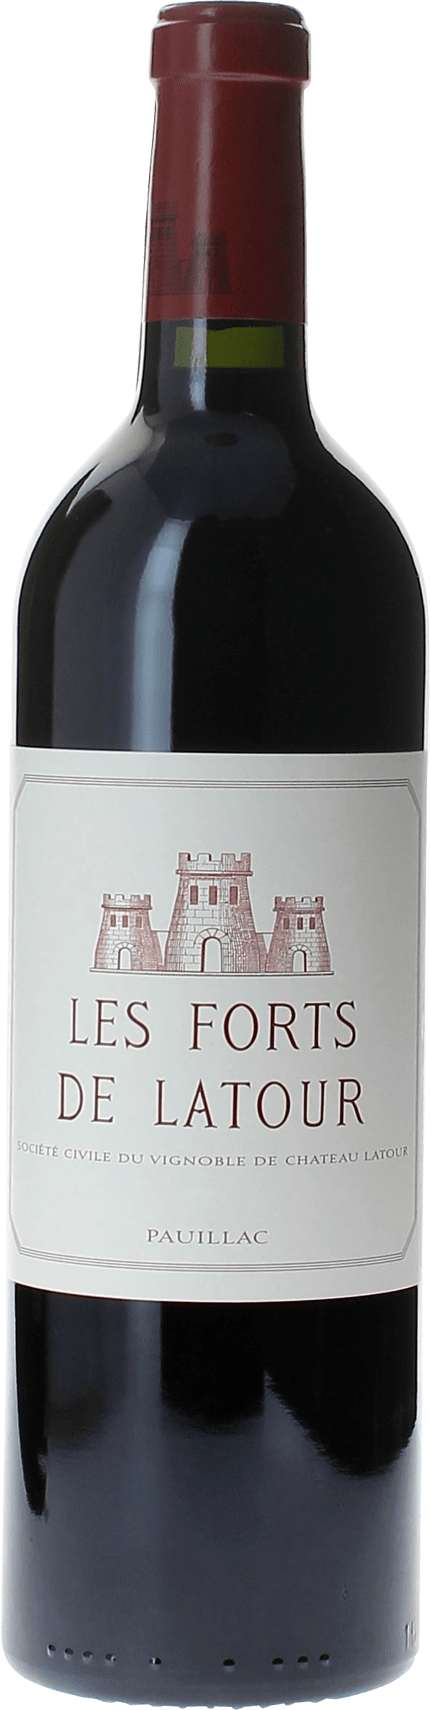 Les forts de latour 1996 2me vin de LATOUR Pauillac, Bordeaux rouge